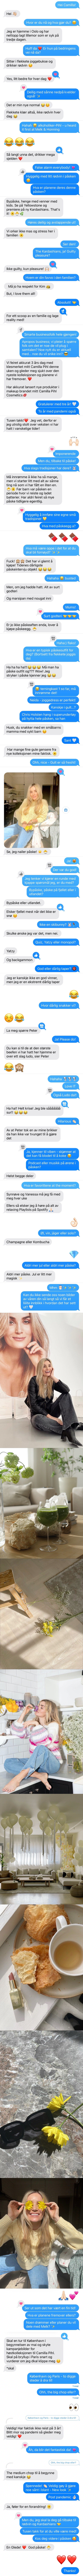 Påske-SMS med influencer og gründer Camilla Pihl